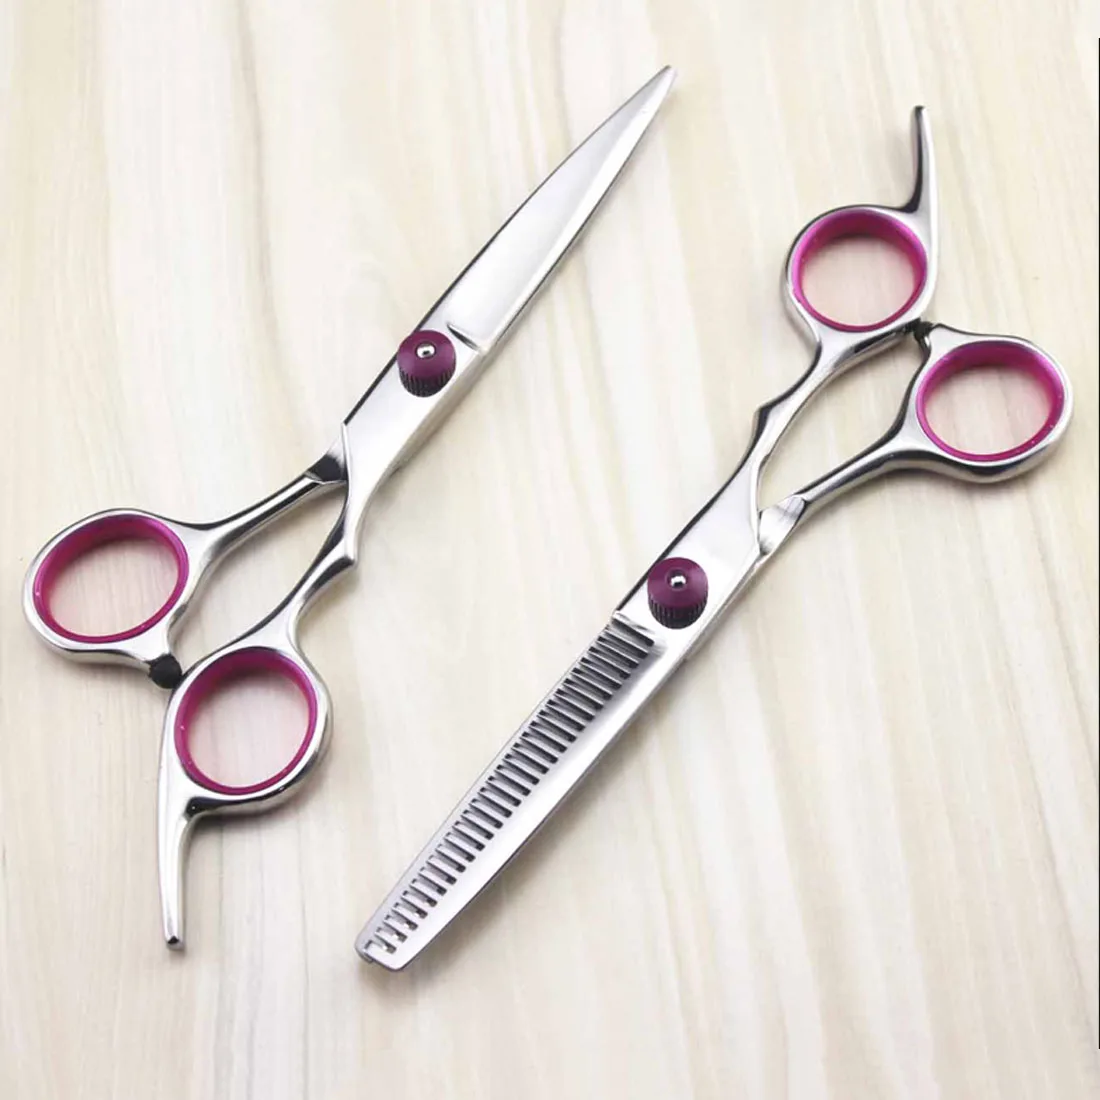 Стрижка истончение ножницы для салона Профессиональная парикмахерская резка тонкие инструменты для моделирования ножницы для волос парикмахерский набор Инструменты для укладки